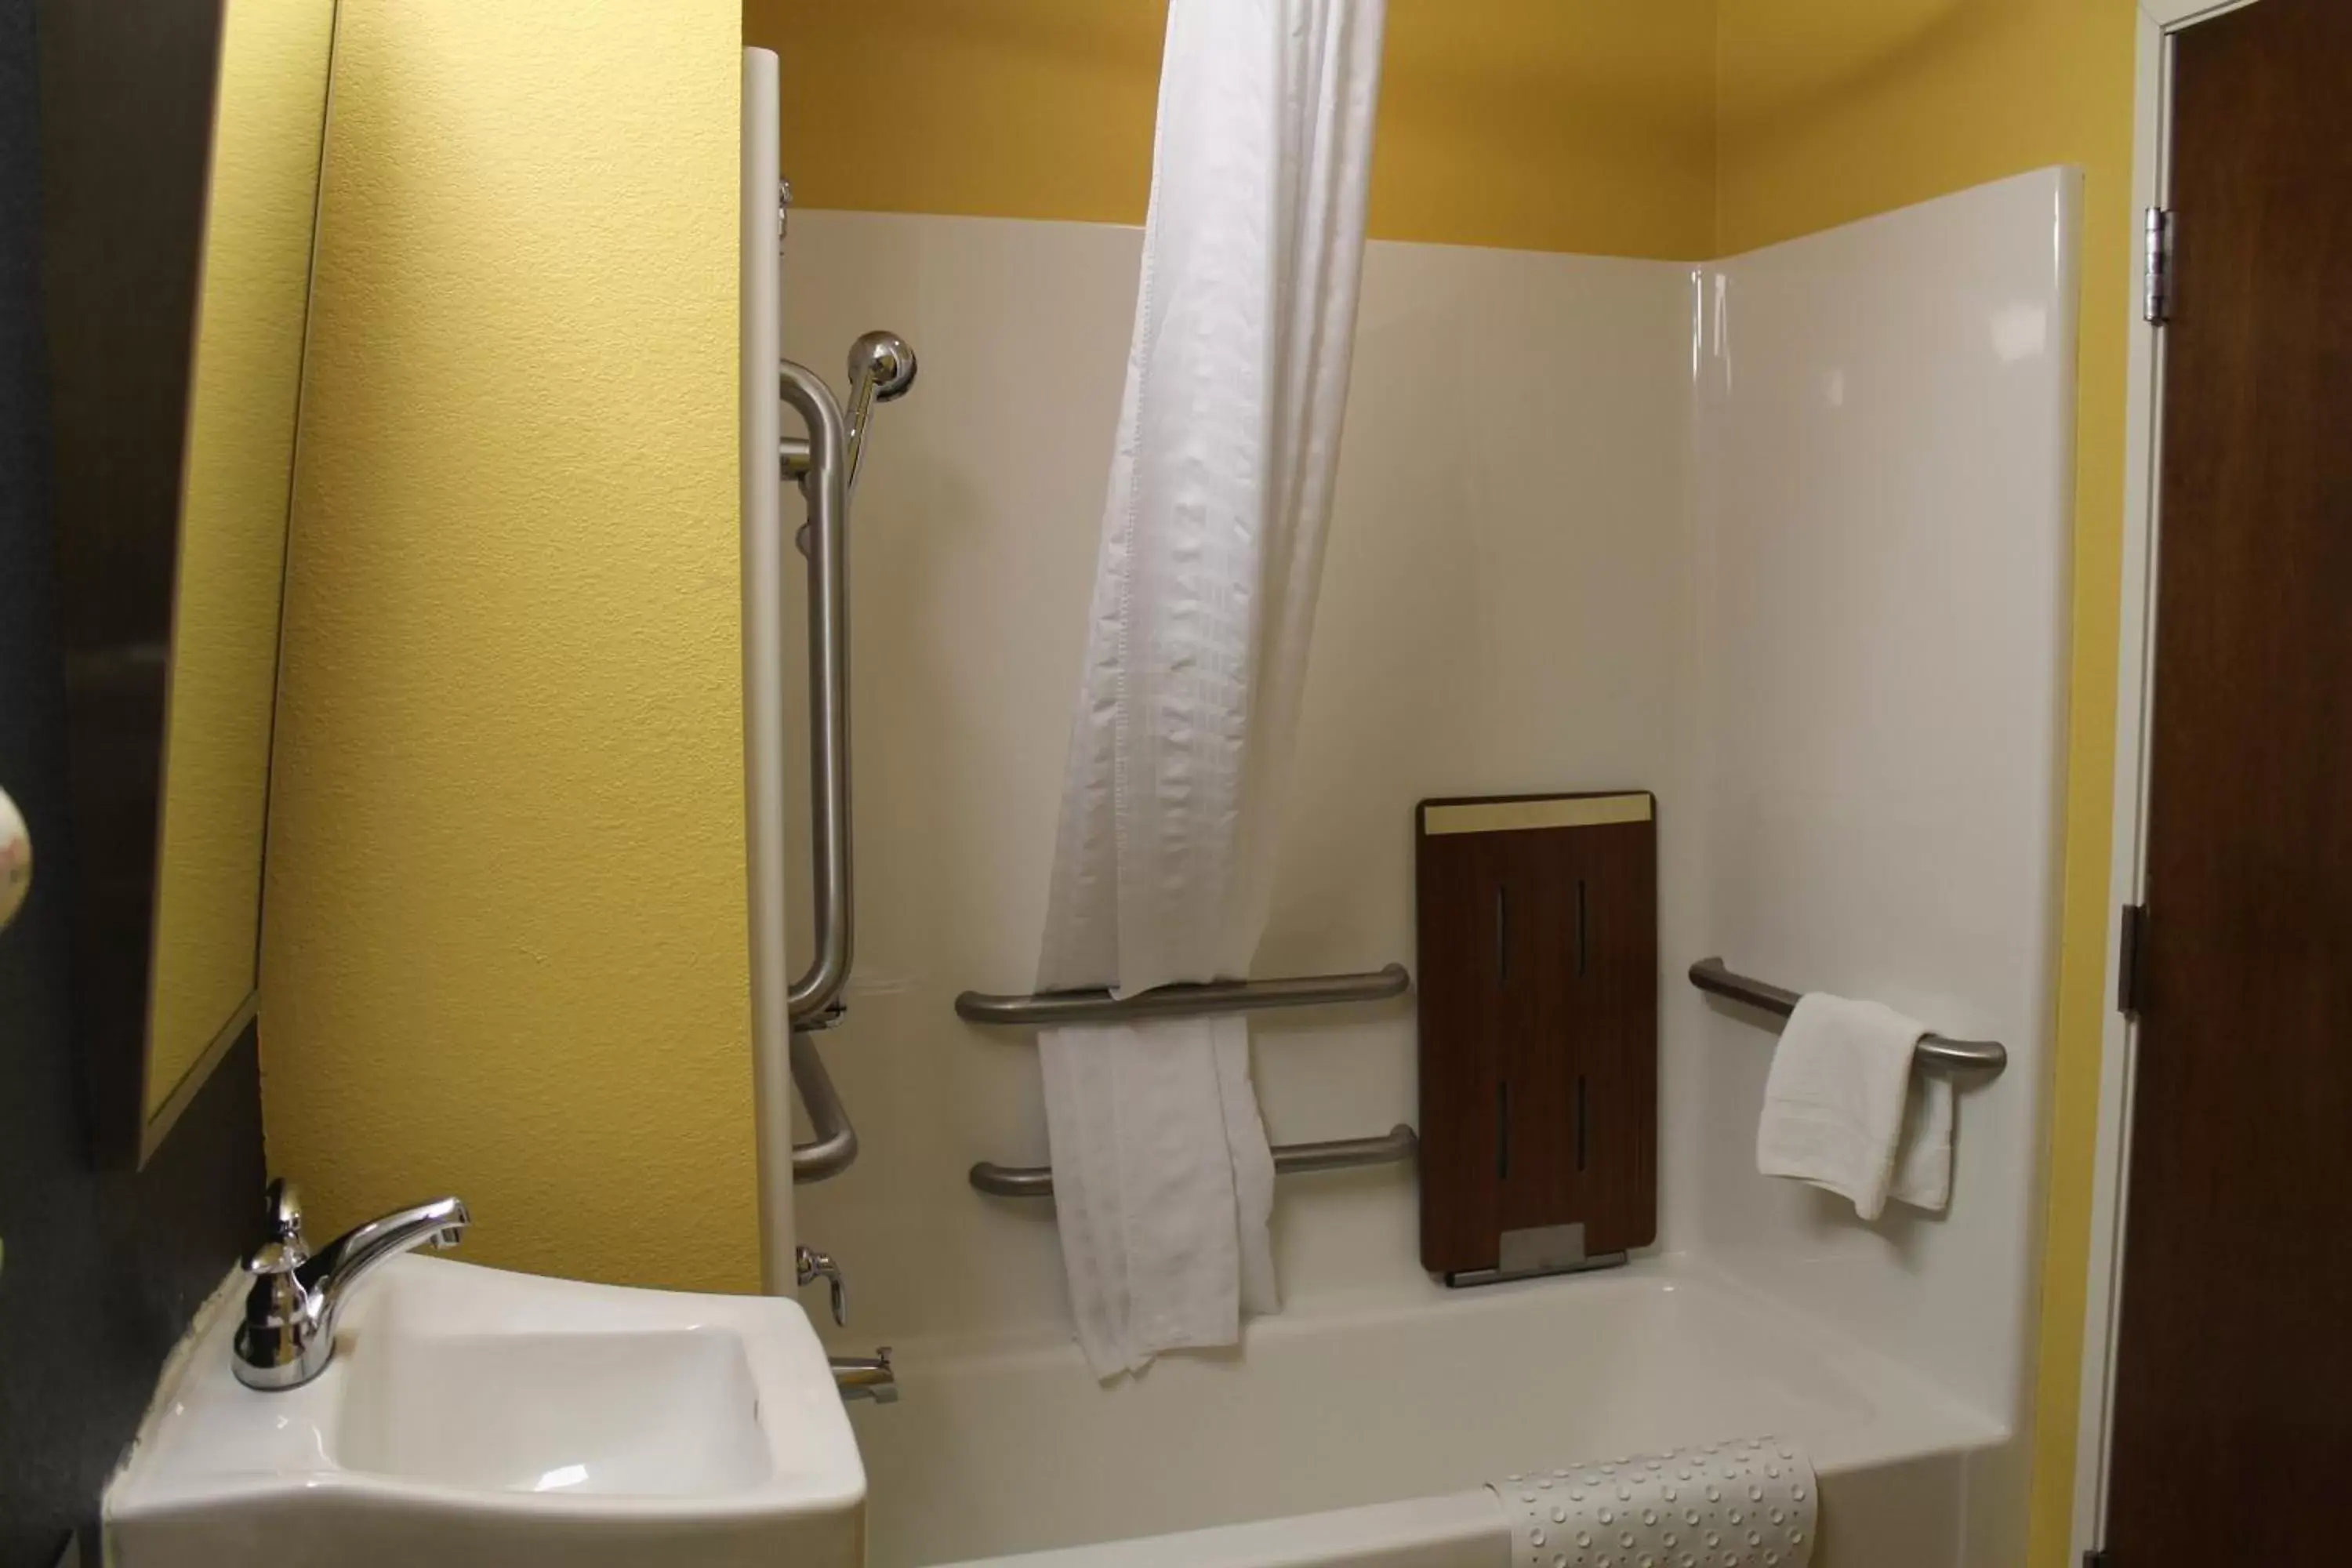 Shower, Bathroom in Microtel Inn & Suites - Kearney